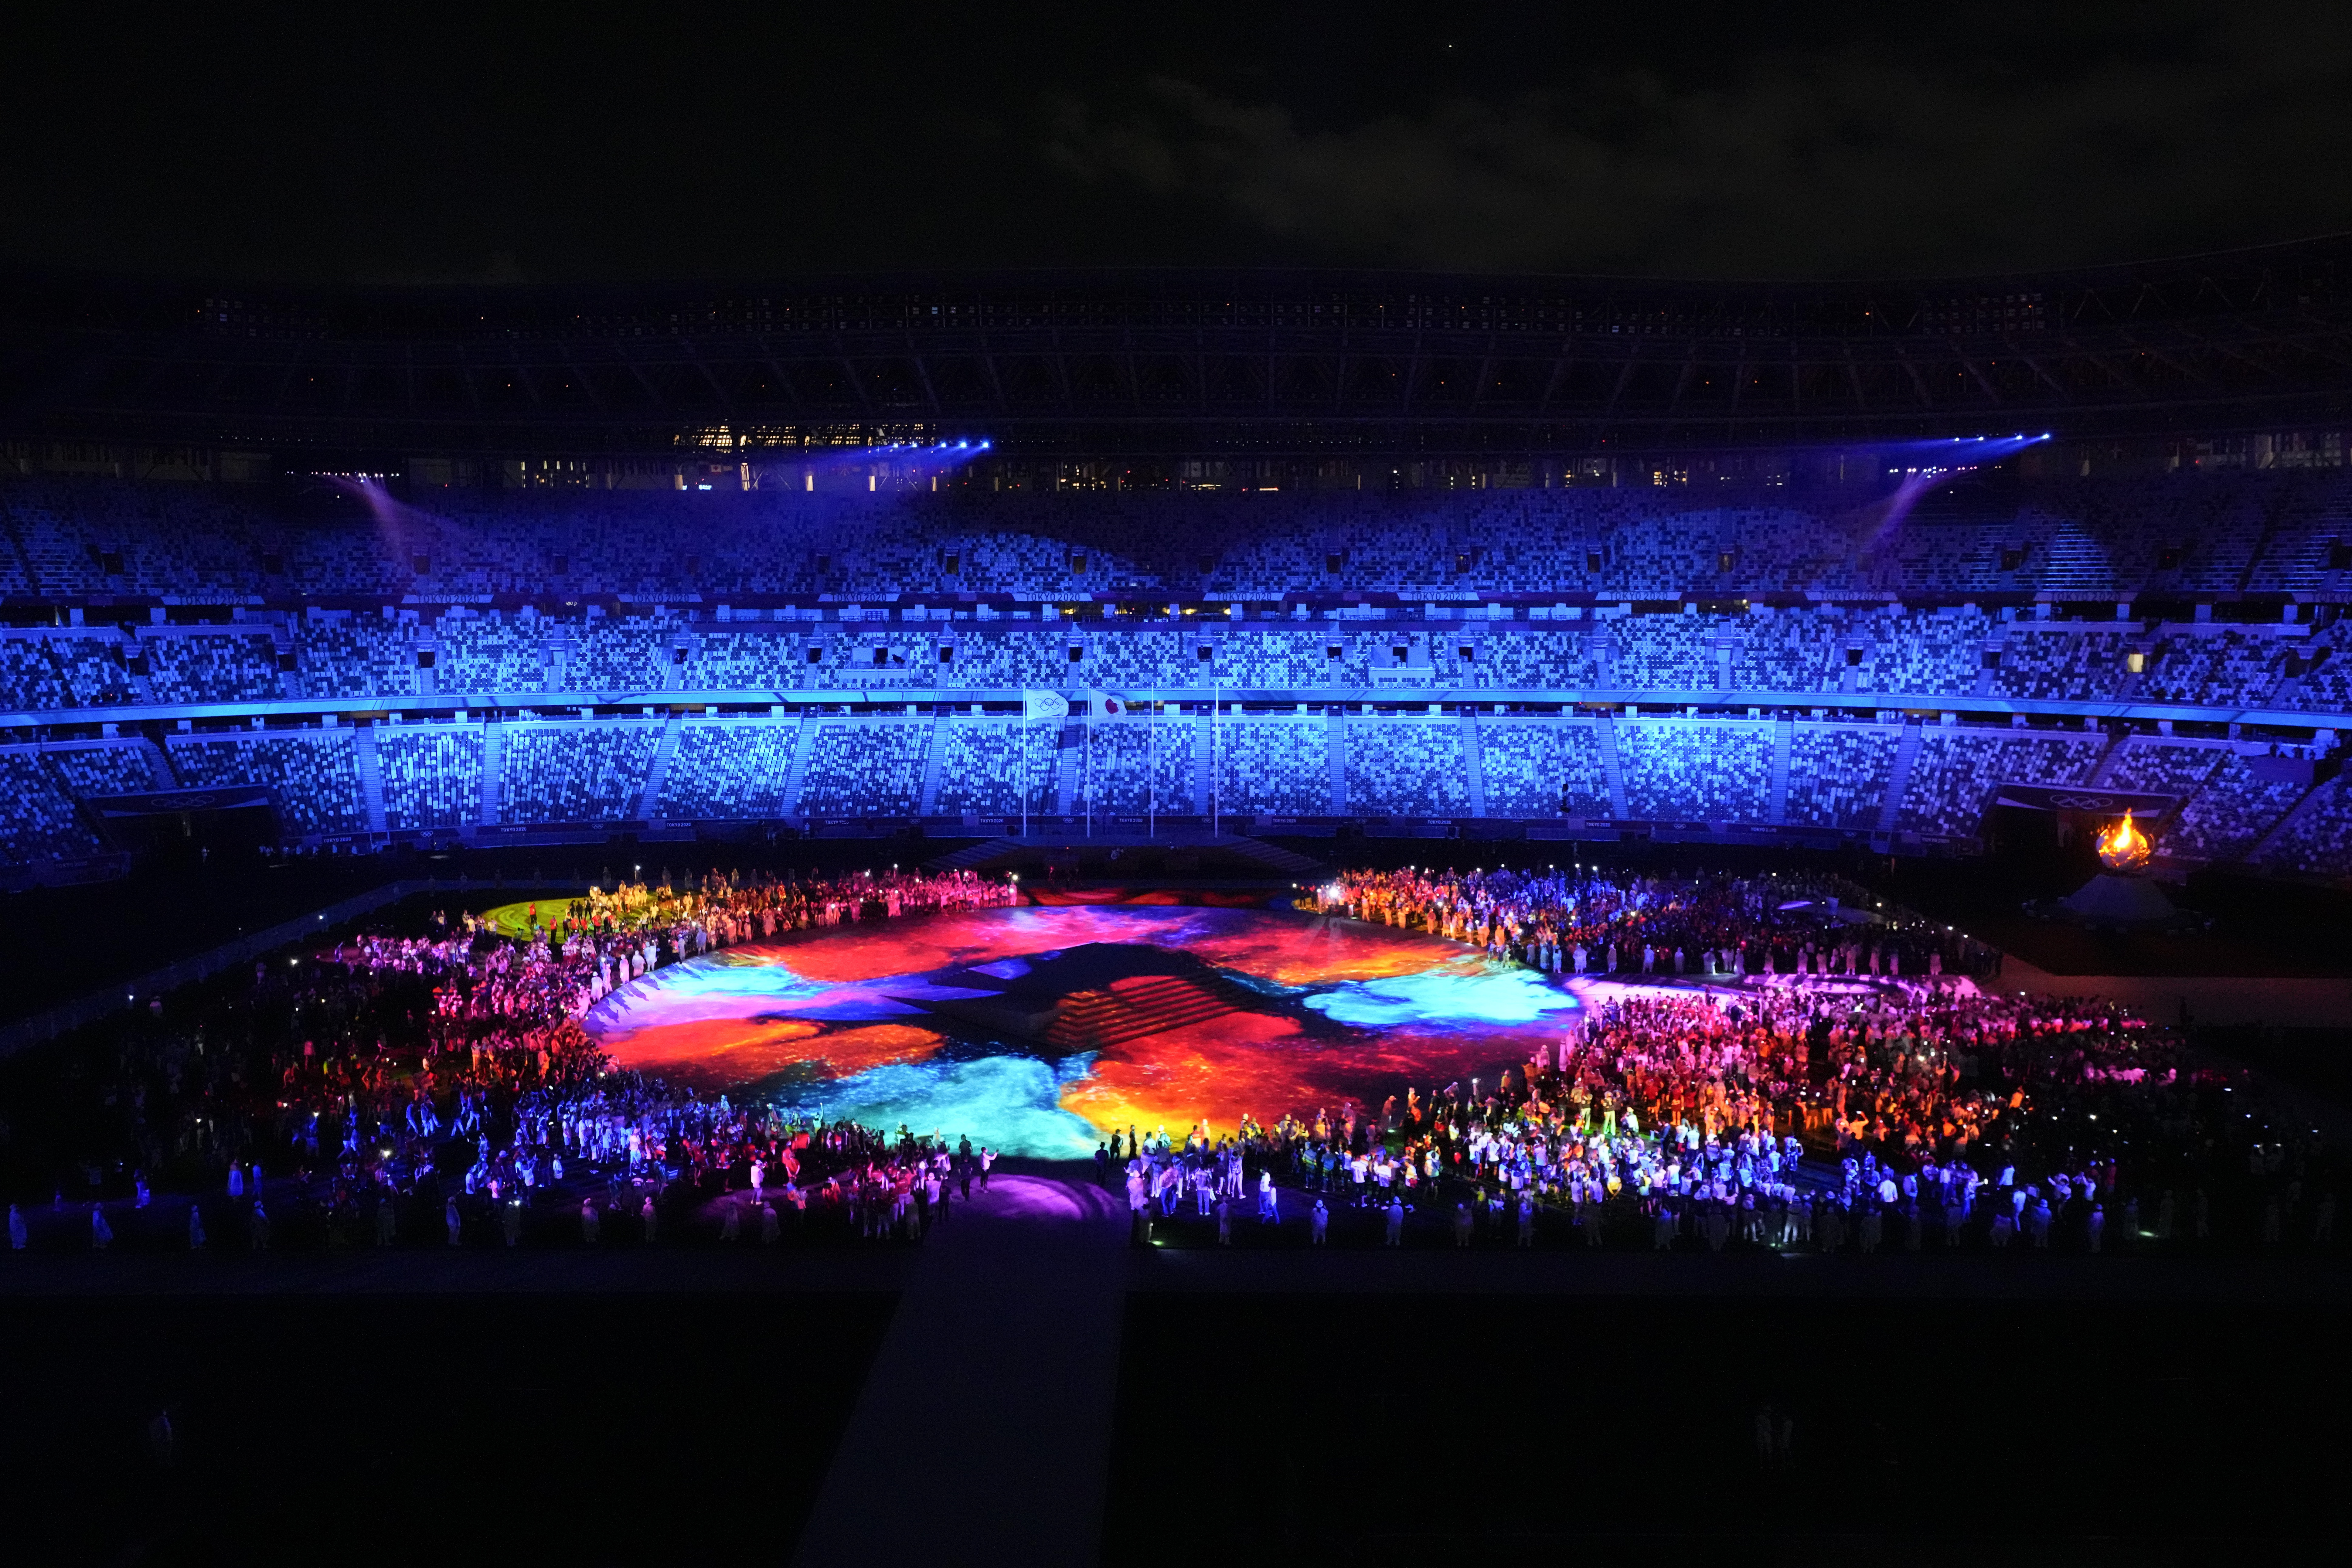 在特别灯光效果下，上演闭幕仪式的奥林匹克体育场呈现了梦幻场景。（美联社照片）

